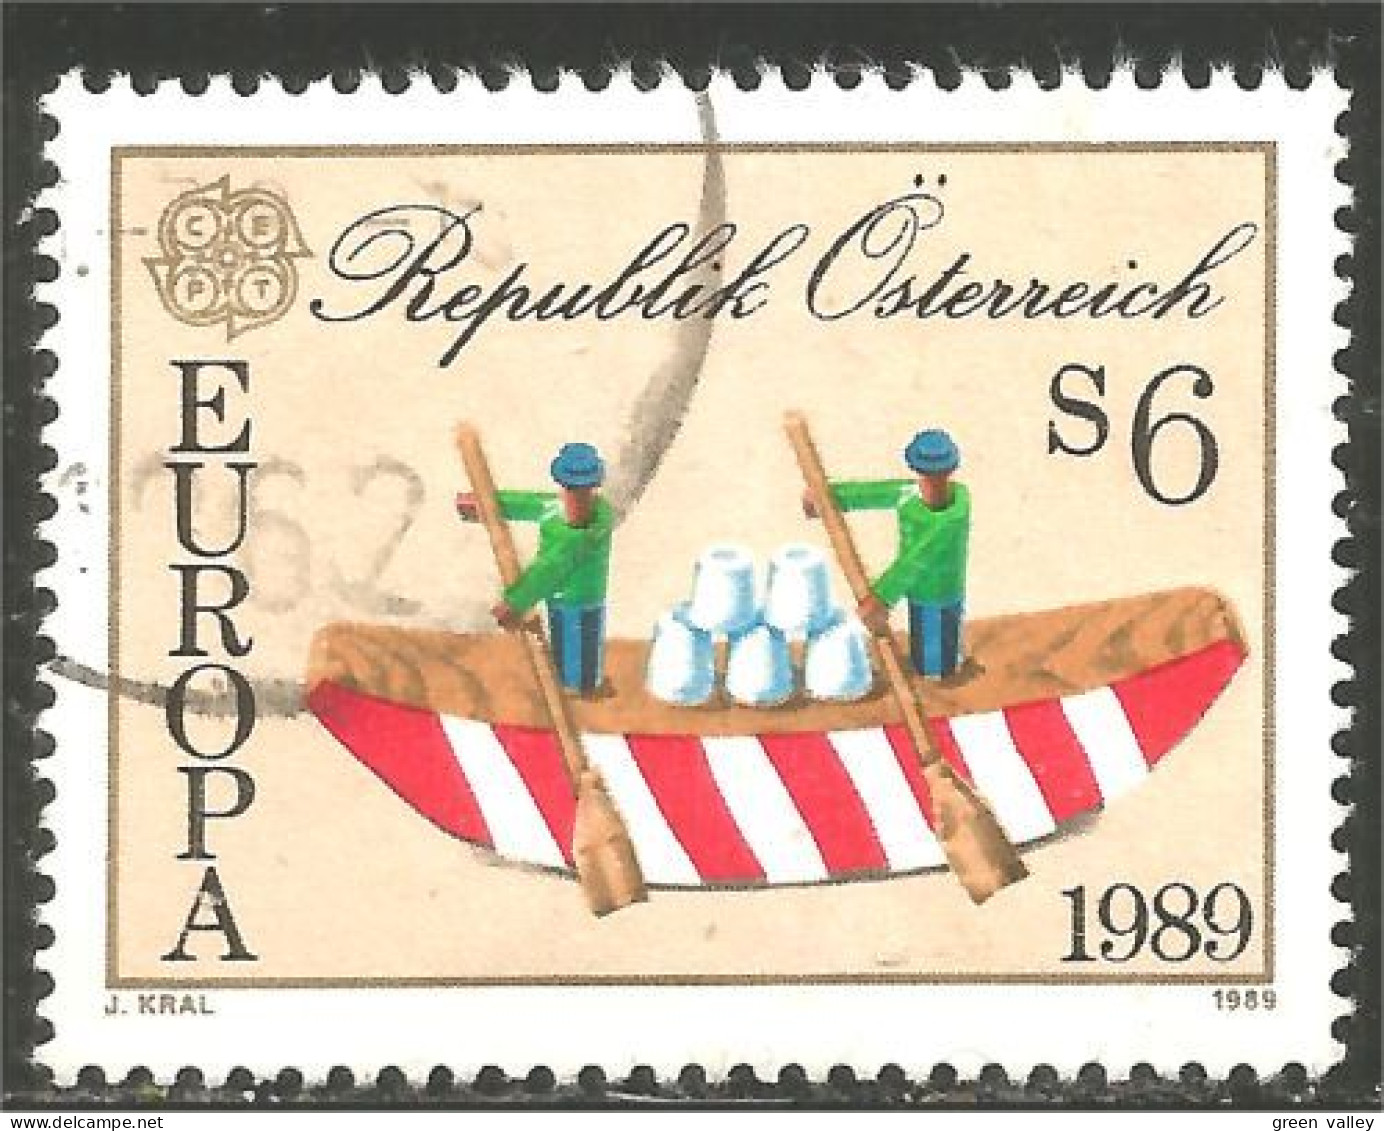 EU89-14c EUROPA-CEPT 1989 Austria Boat Bateau Jeux Enfants Children Games Kinderspiele - Schiffe